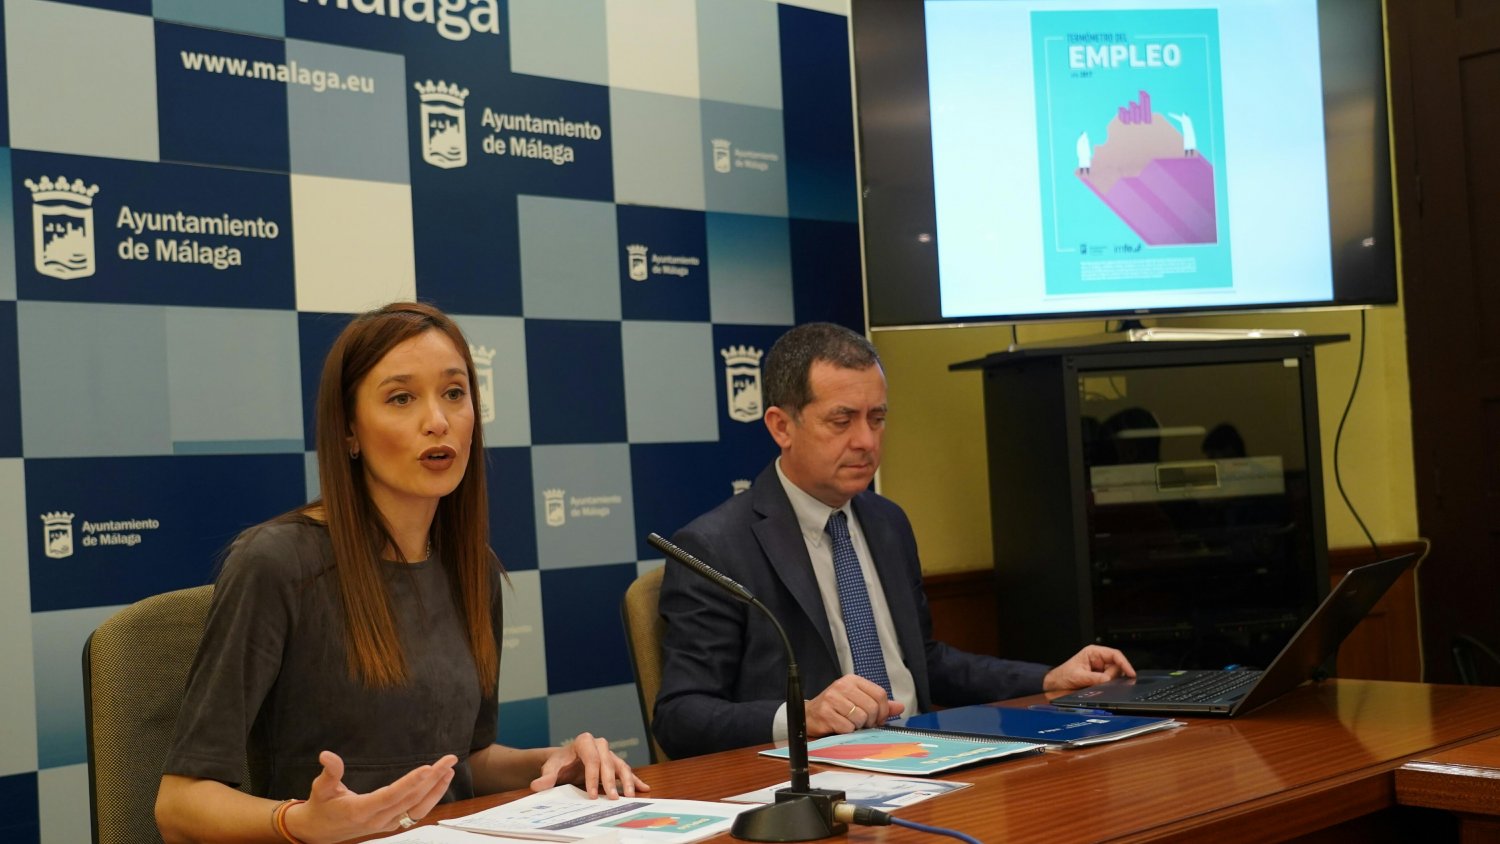 Málaga posibilita la formación de 663 ontratos laborales a través del IMFE